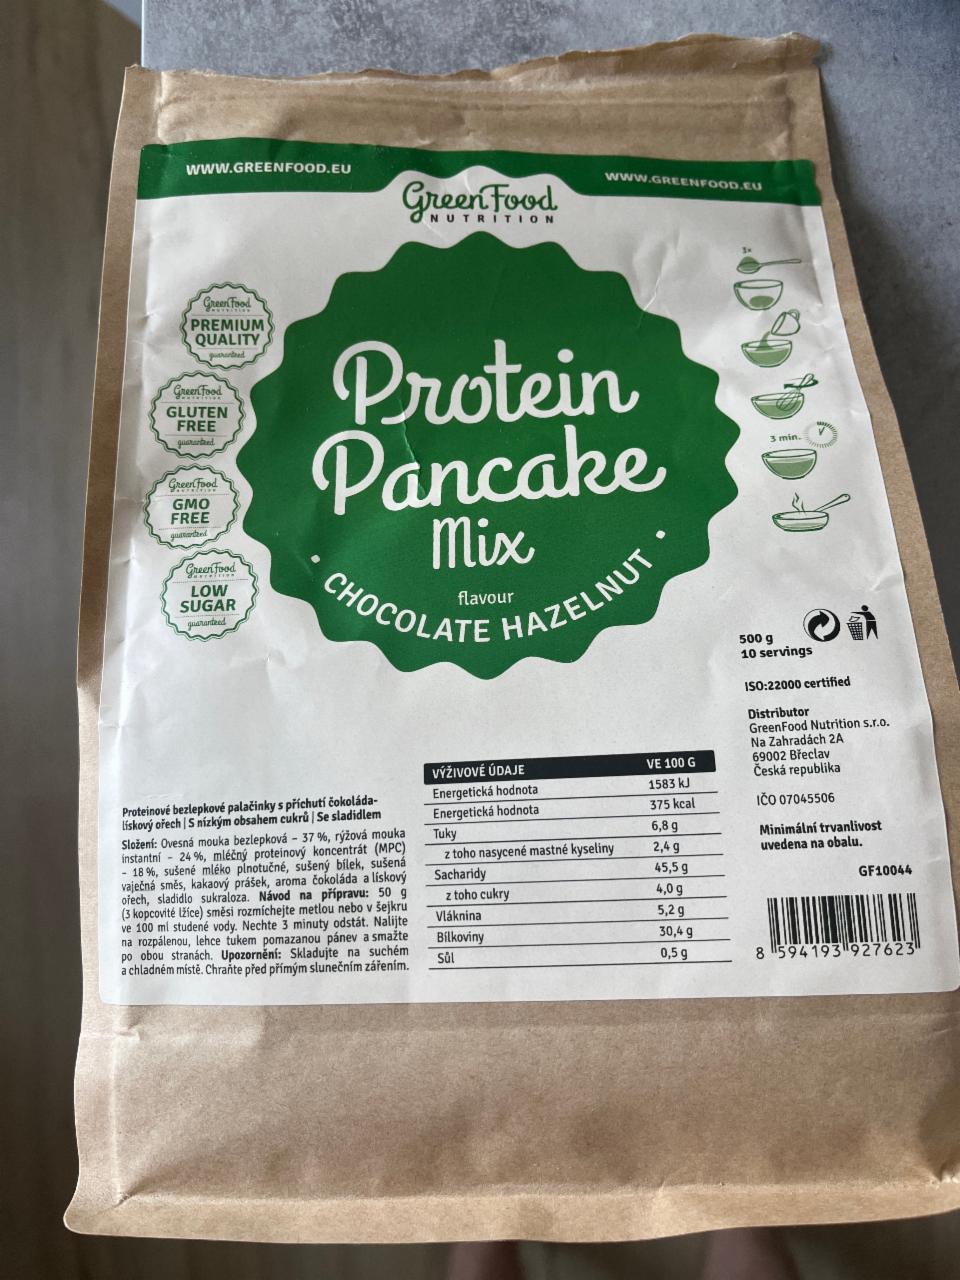 Fotografie - Protein Pancake Mix chocolate hazelnut GreenFood Nutrition